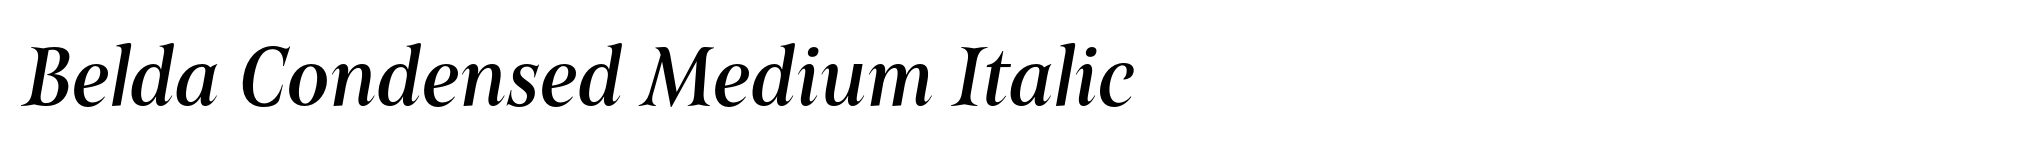 Belda Condensed Medium Italic image